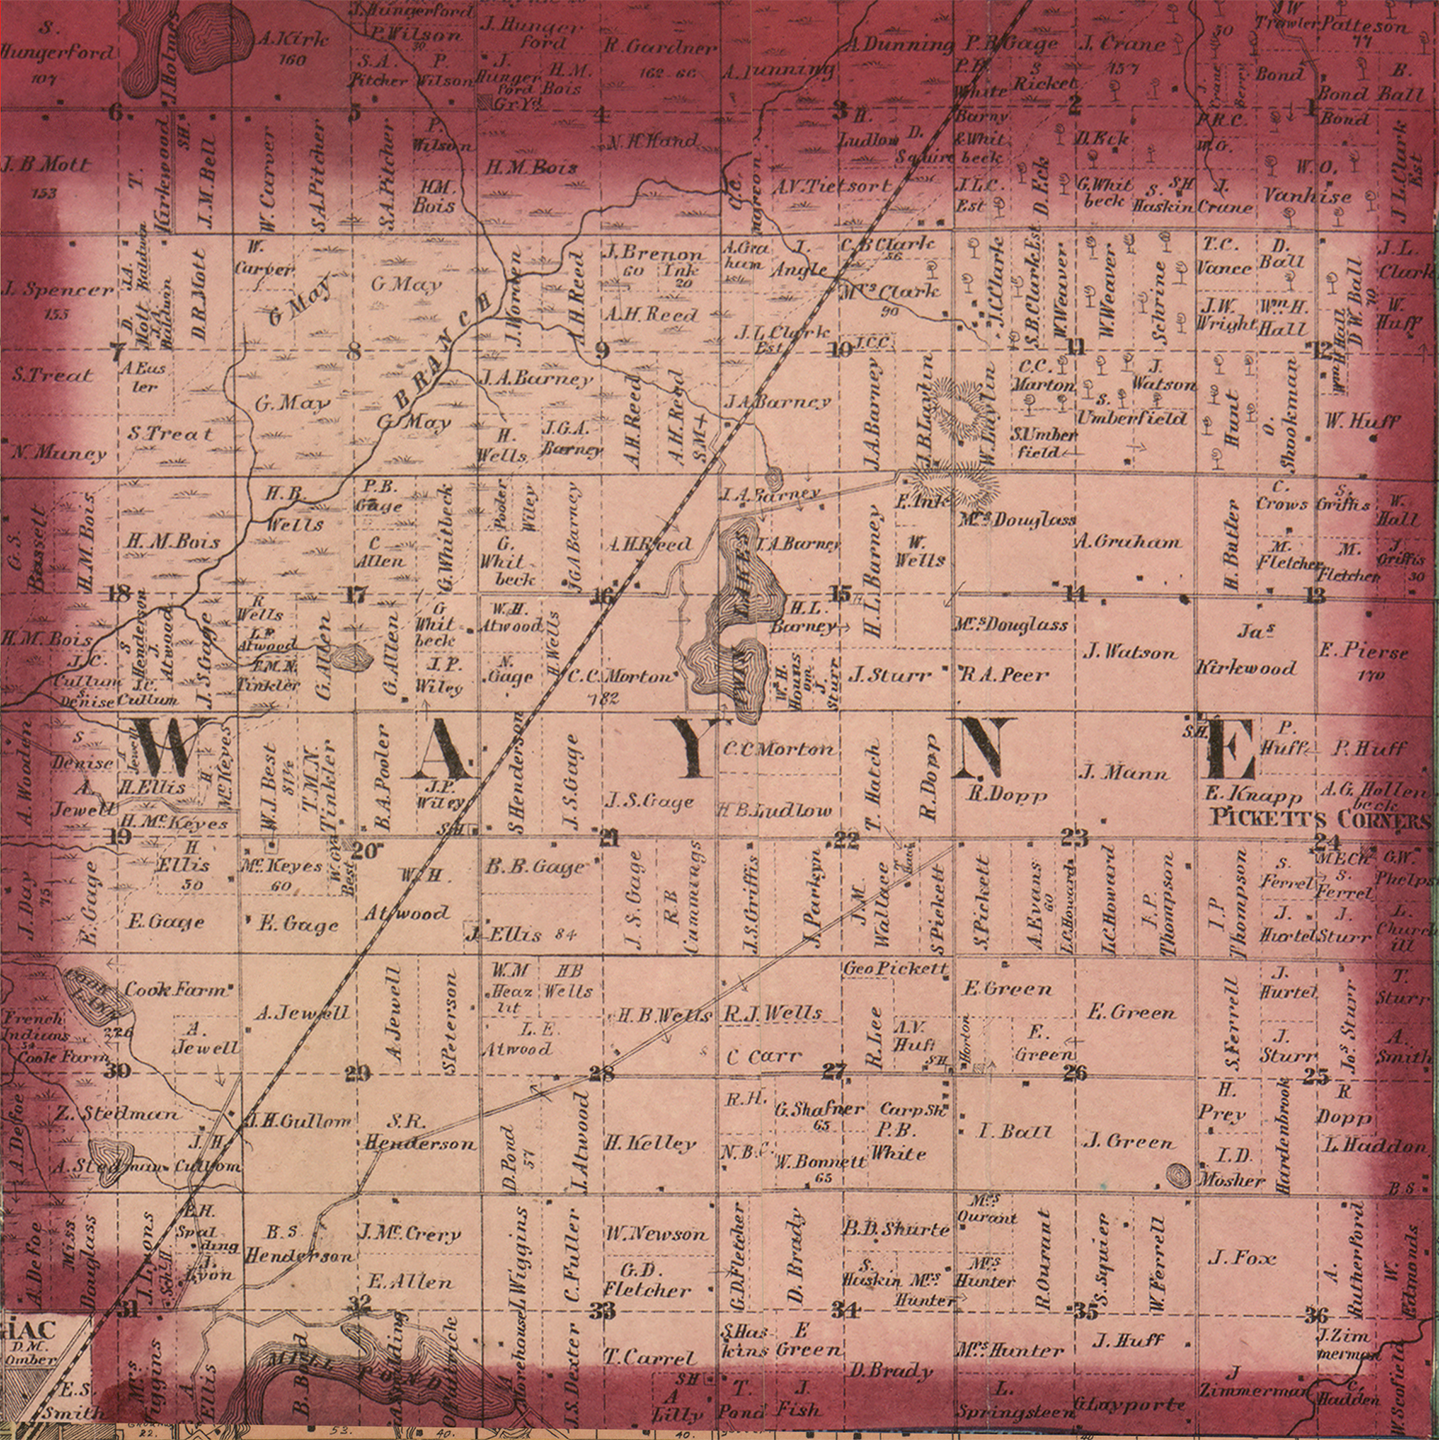 1860 Wayne Township Michigan landownership map